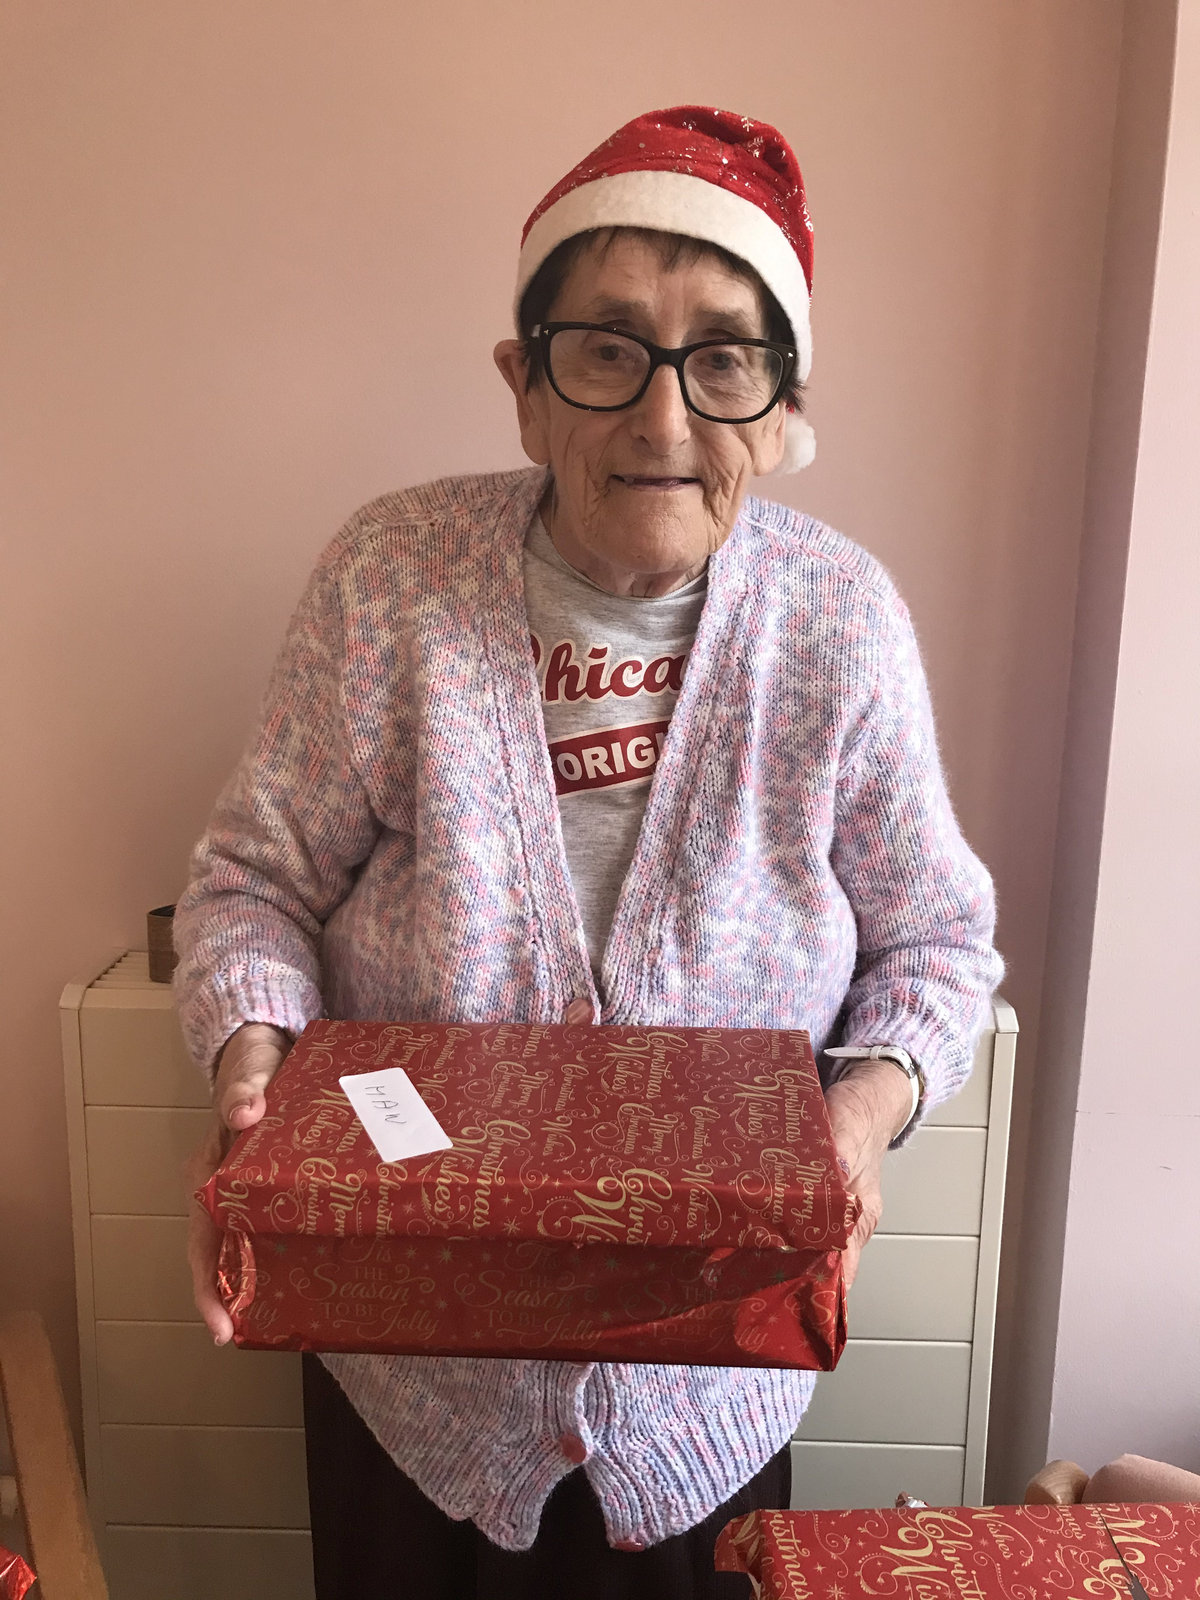 不讓有人孤單…養老院80歲奶奶「自費填滿500個鞋盒」　送禮物給最有需要的人